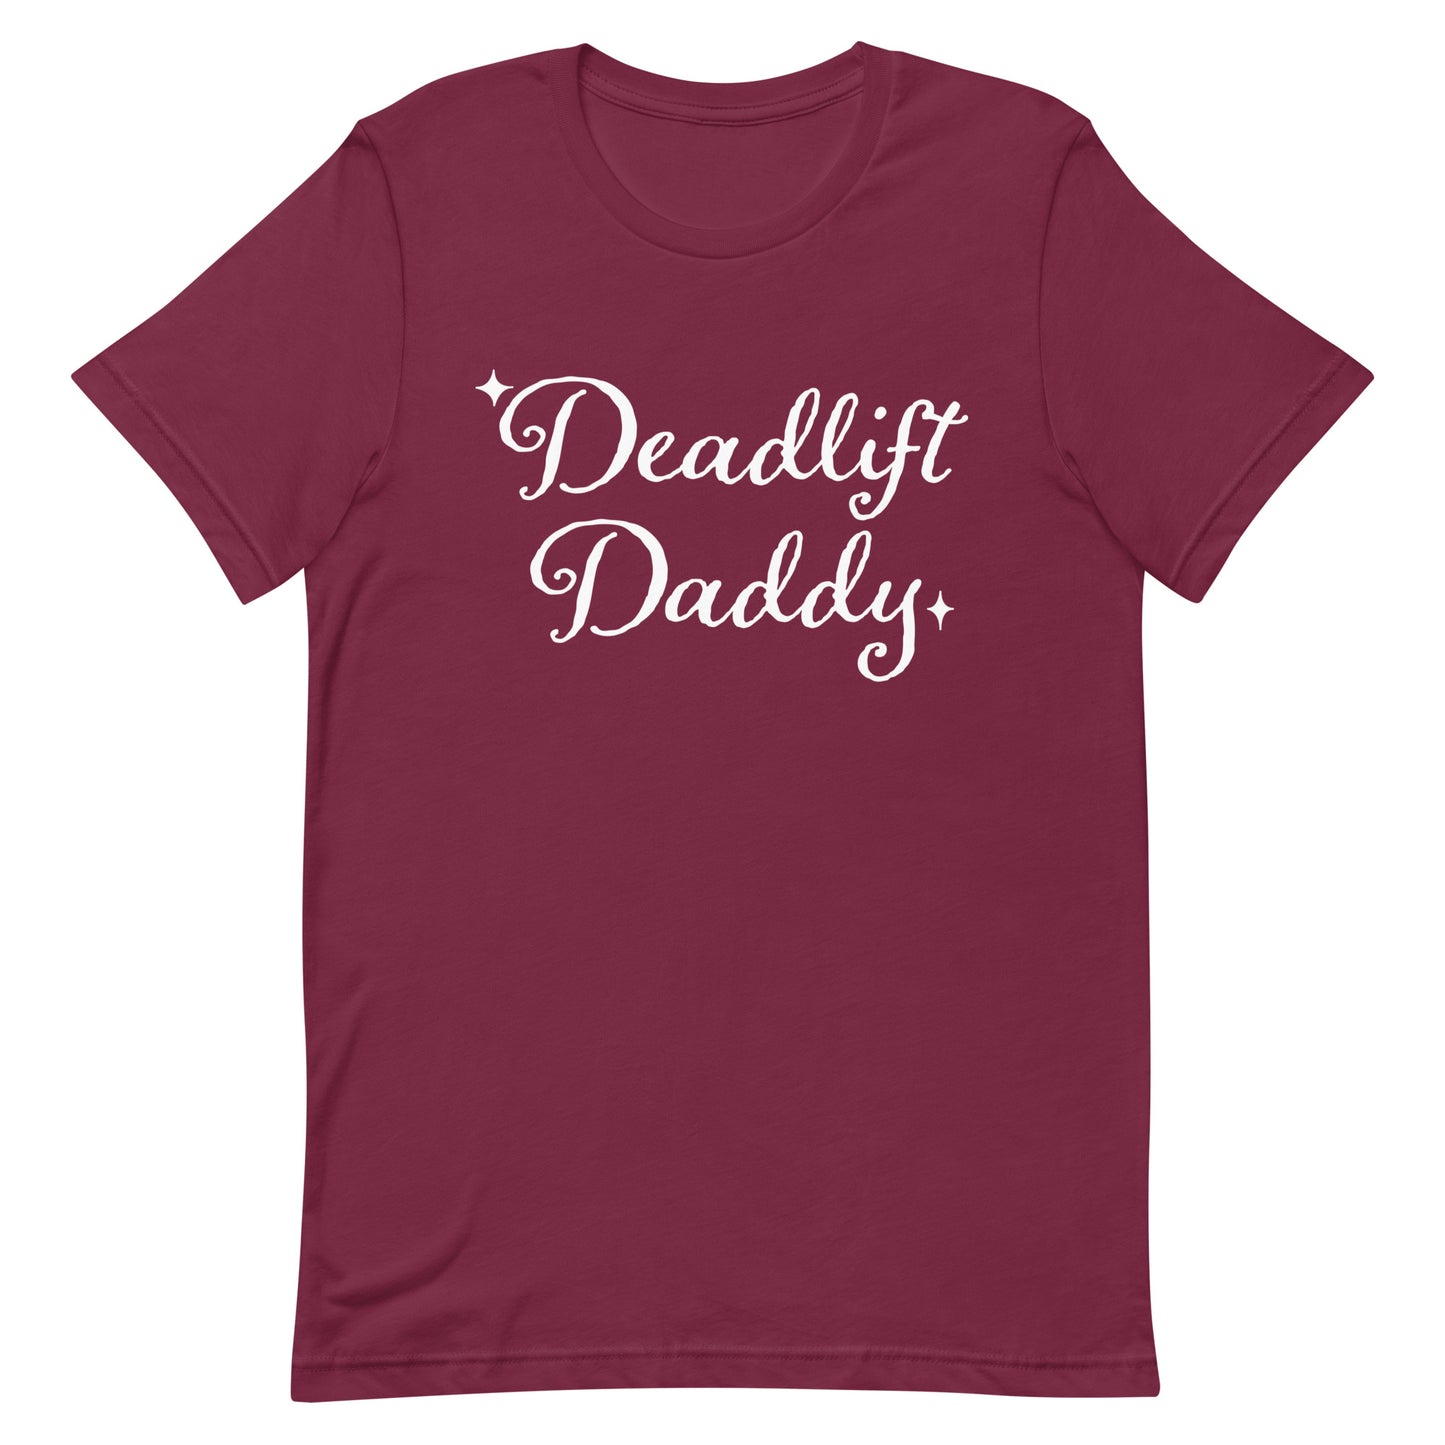 Deadlift Daddy Unisex t-shirt